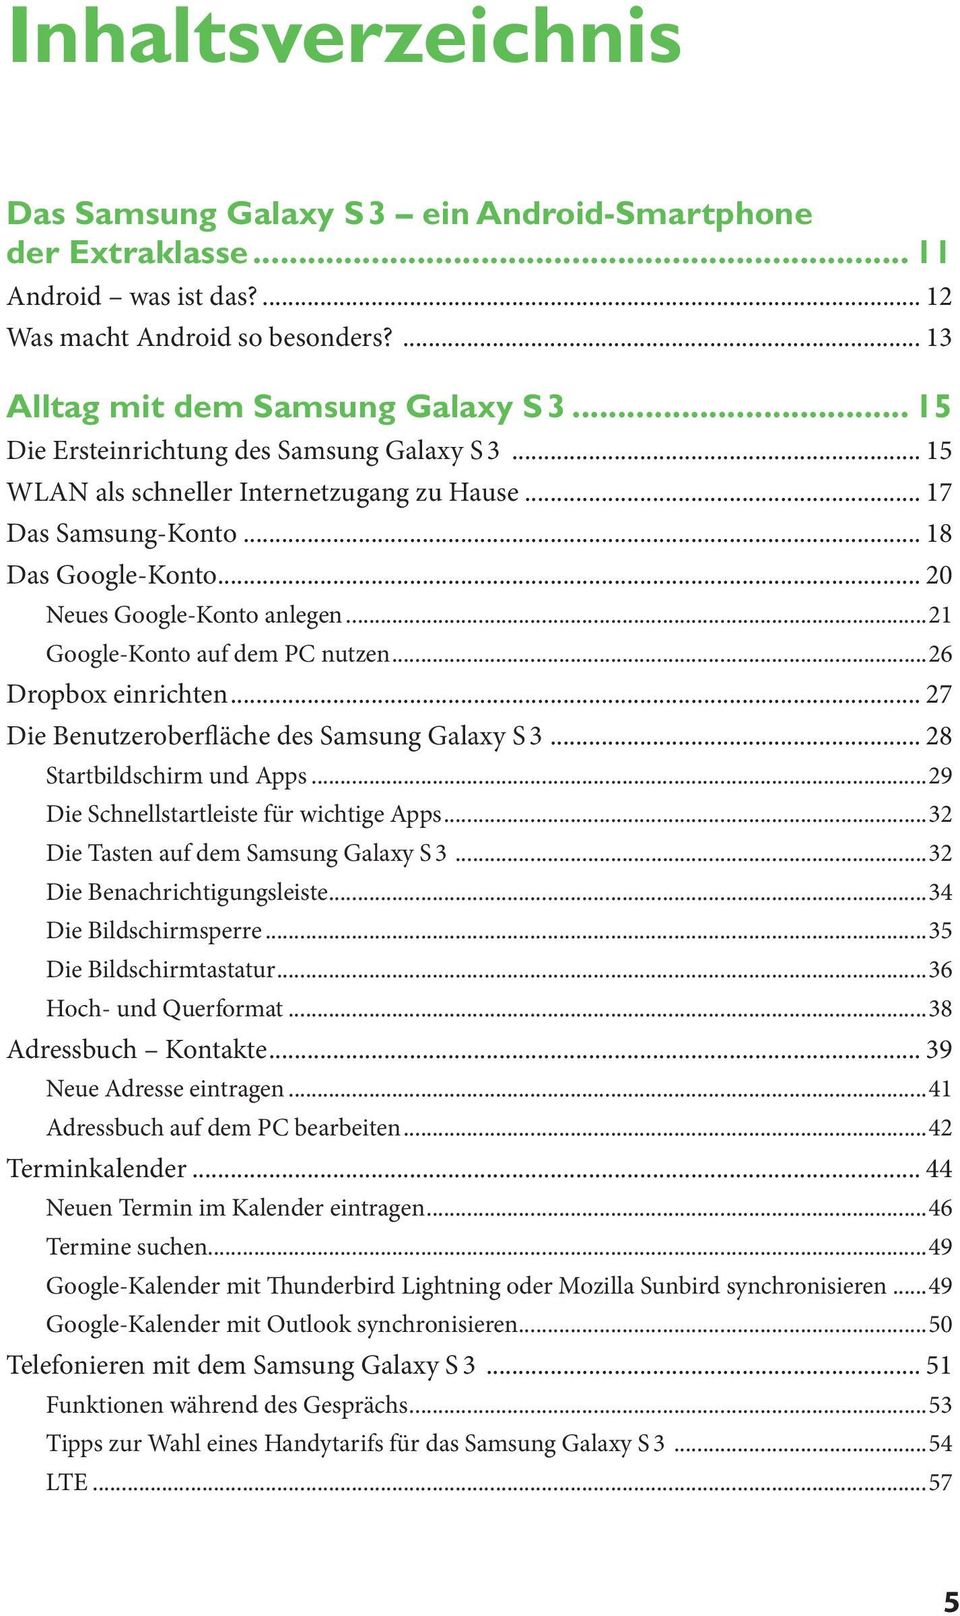 ..21 Google-Konto auf dem PC nutzen...26 Dropbox einrichten... 27 Die Benutzeroberfläche des Samsung Galaxy S 3... 28 Startbildschirm und Apps...29 Die Schnellstartleiste für wichtige Apps.